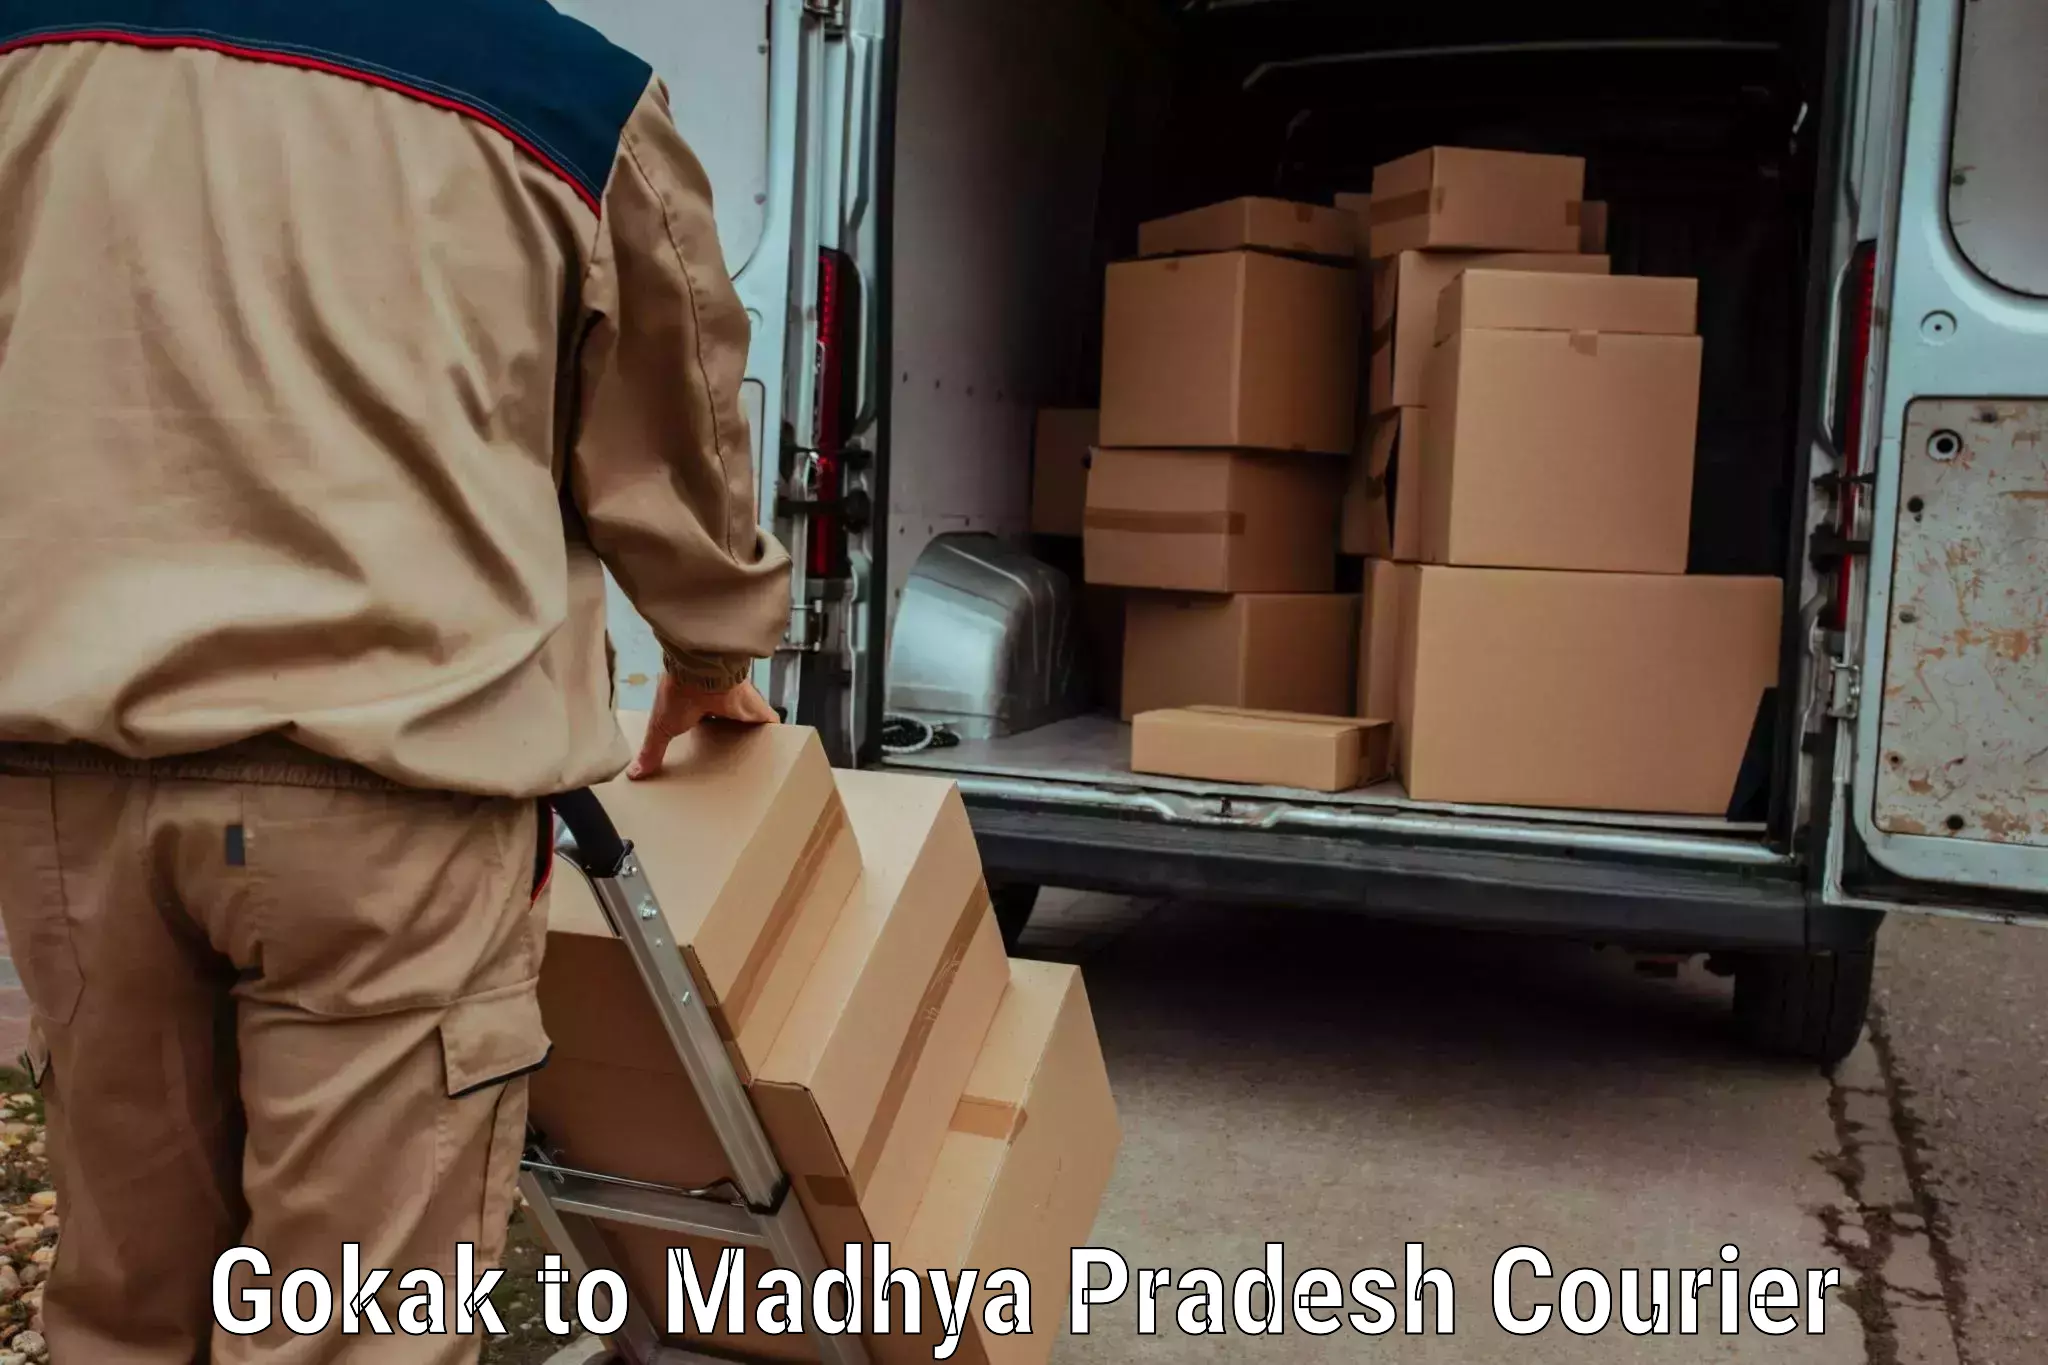 Flexible delivery schedules Gokak to Lavkush Nagar